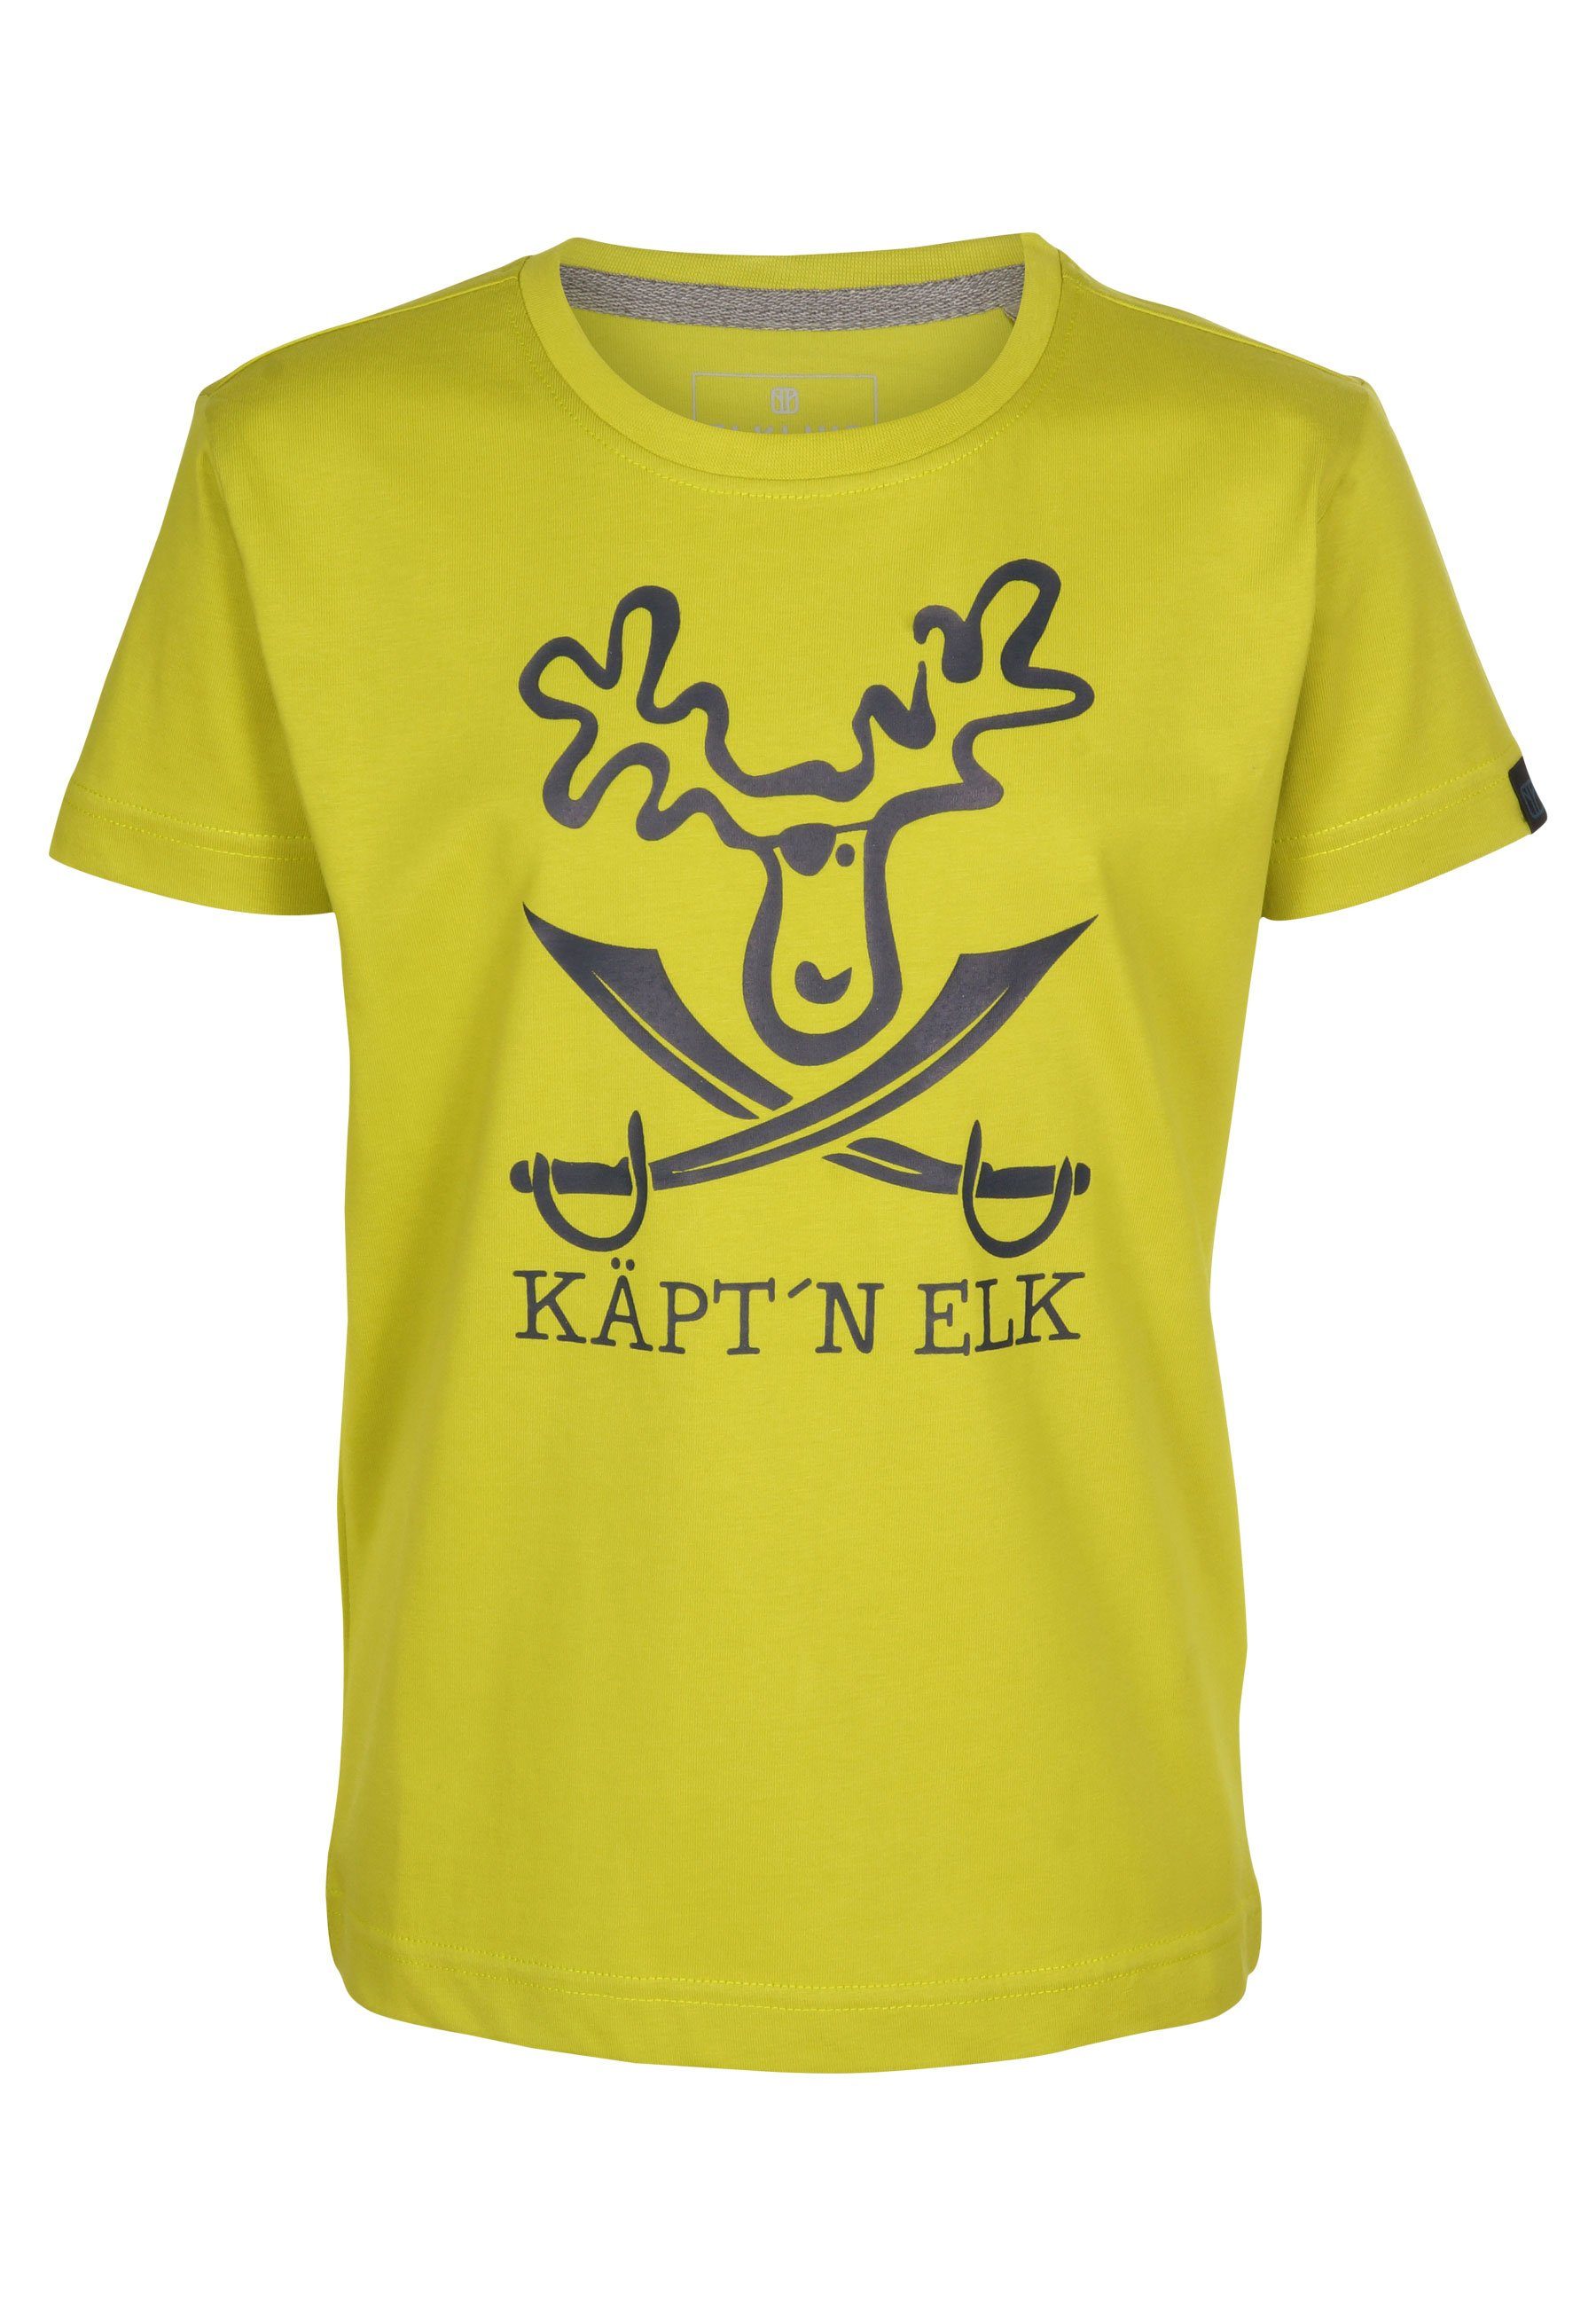 Elkline T-Shirt Schatzinsel Elch Piraten Brust Print citronelle